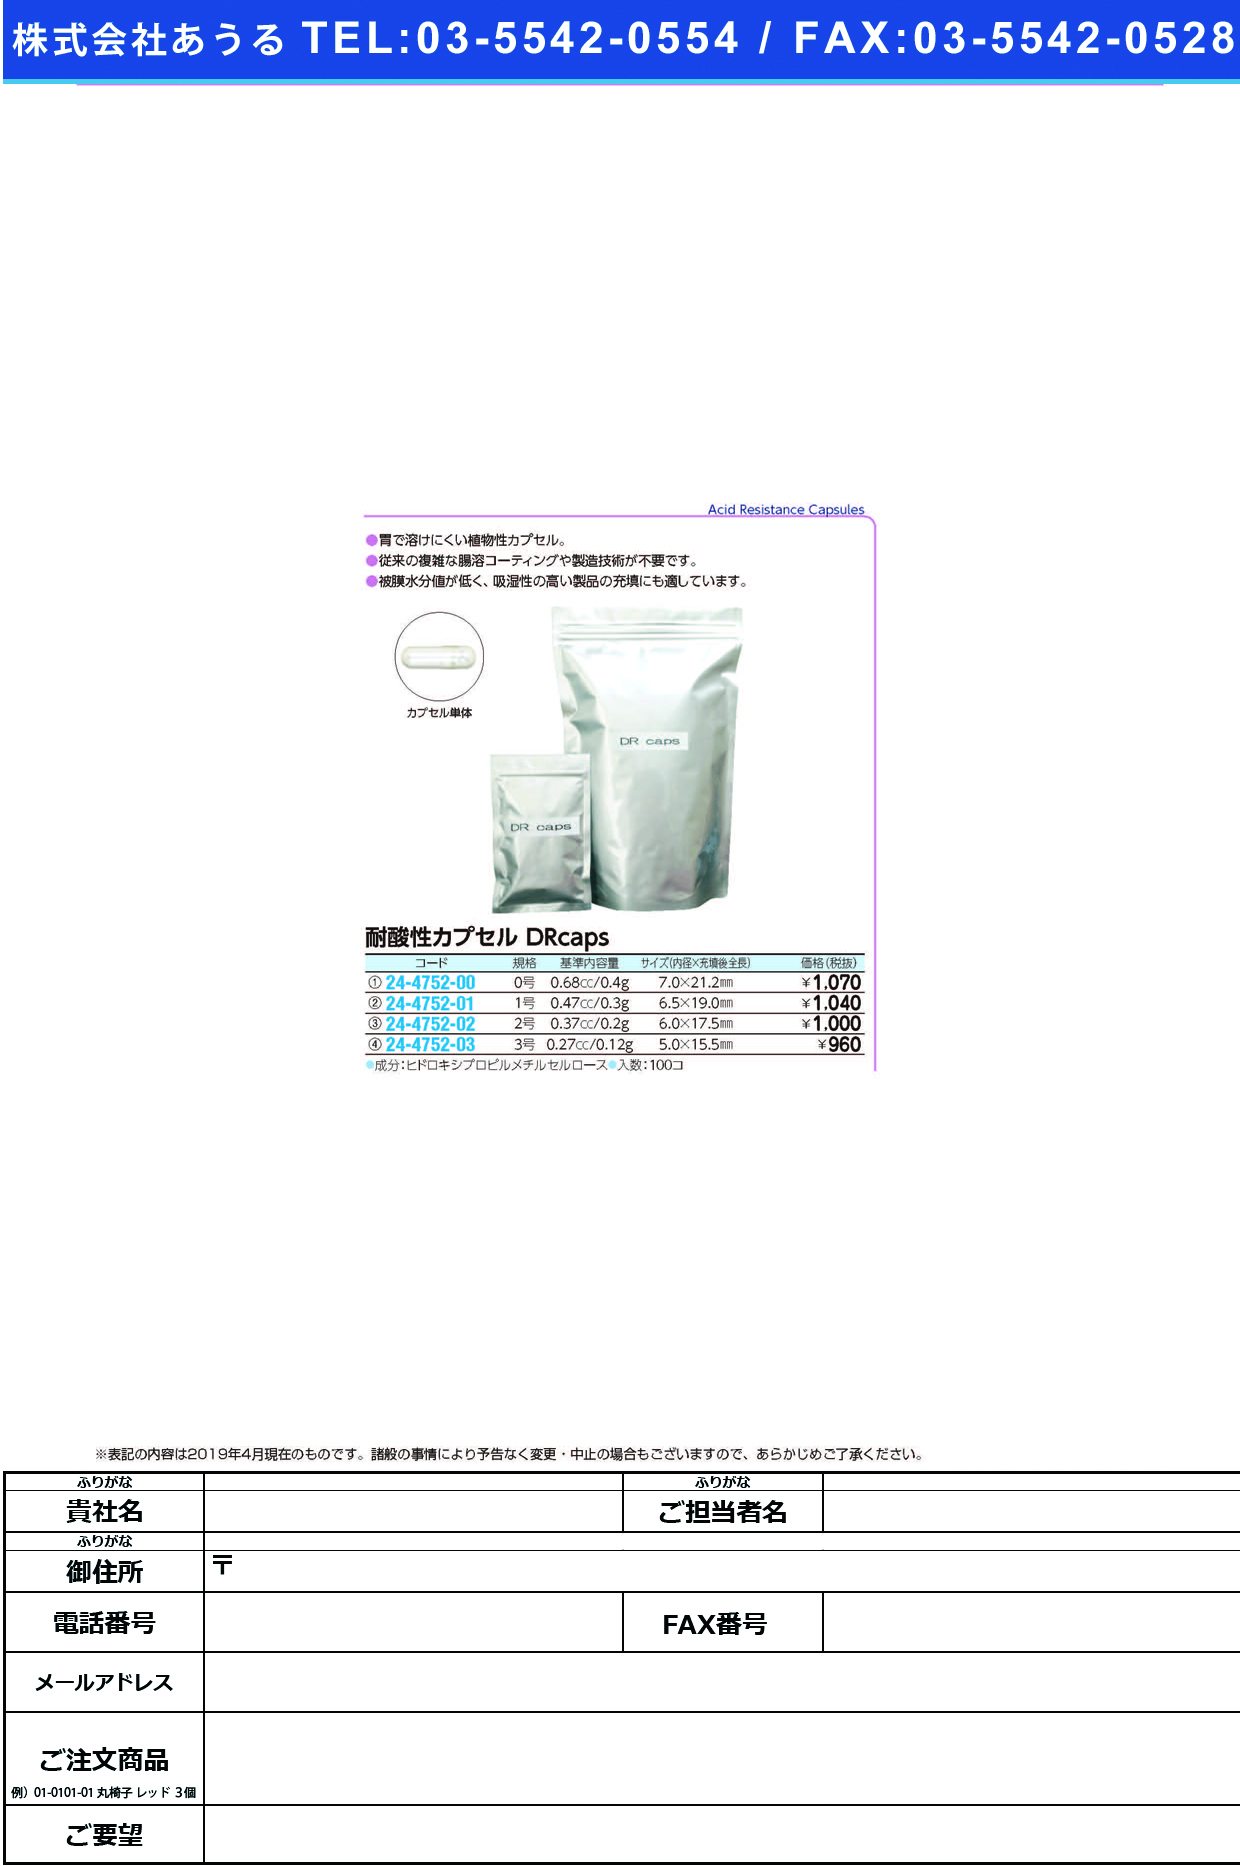 (24-4752-00)耐酸性カプセルＤＲｃａｐｓ #0(ﾄｳﾒｲ)100ｺｲﾘ ﾀｲｻﾝｾｲｶﾌﾟｾﾙDRCAPS【1袋単位】【2019年カタログ商品】